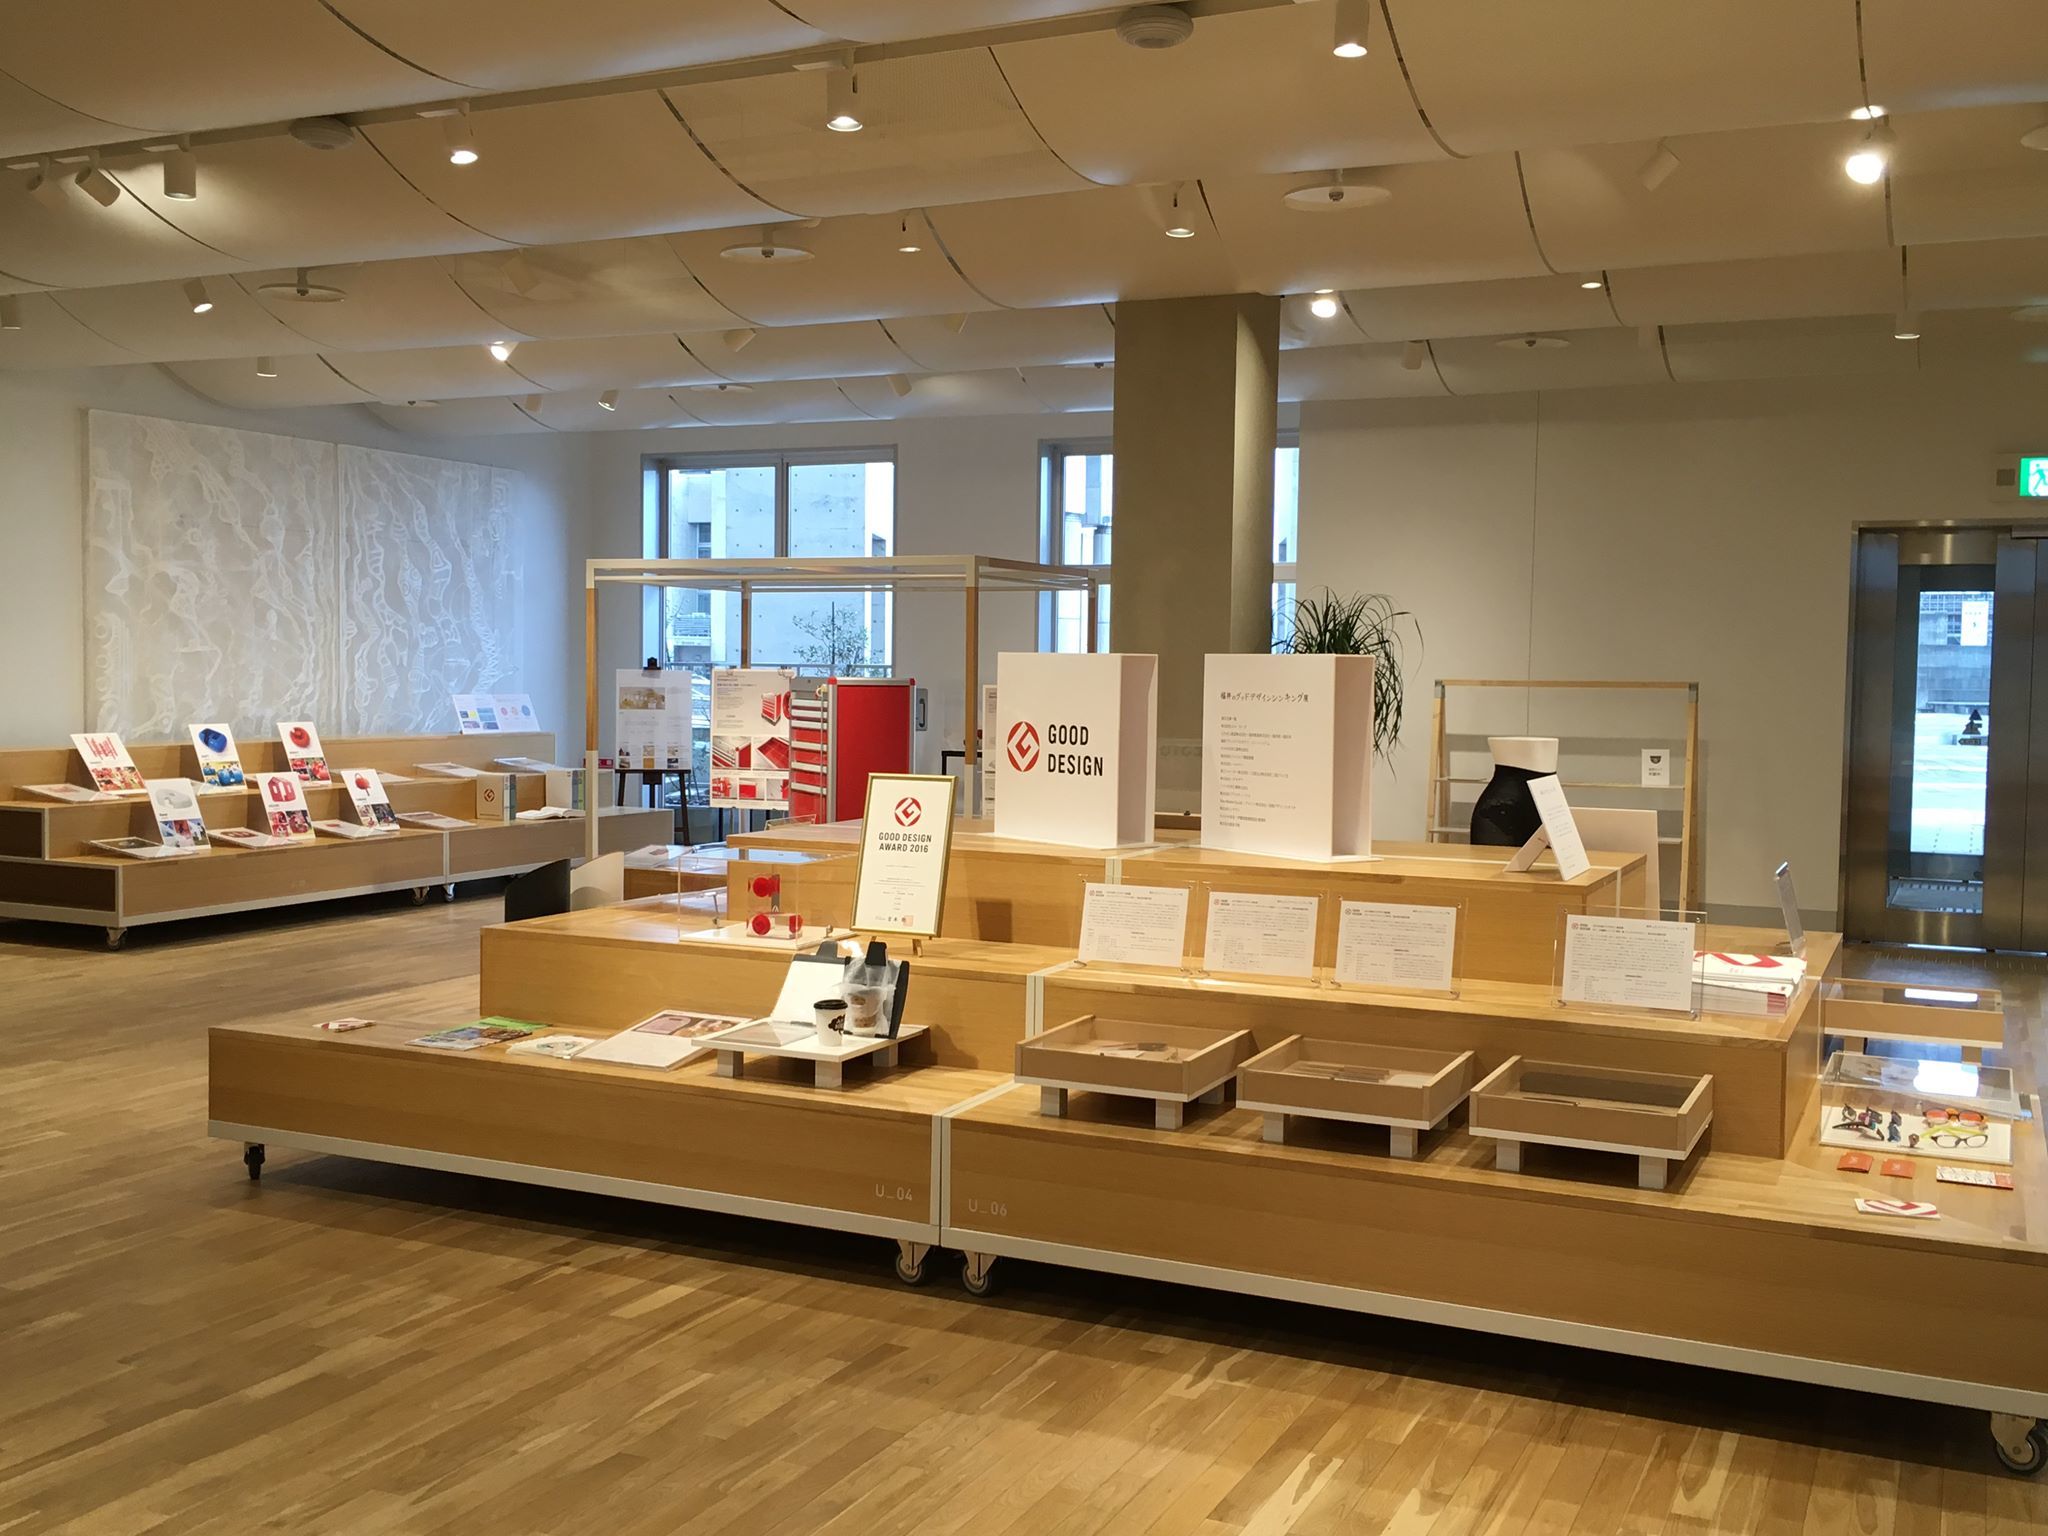 「福井のグッドデザインシンキング展」に弊社設計のむらかみ食堂が出展されています。_f0165030_18515910.jpg